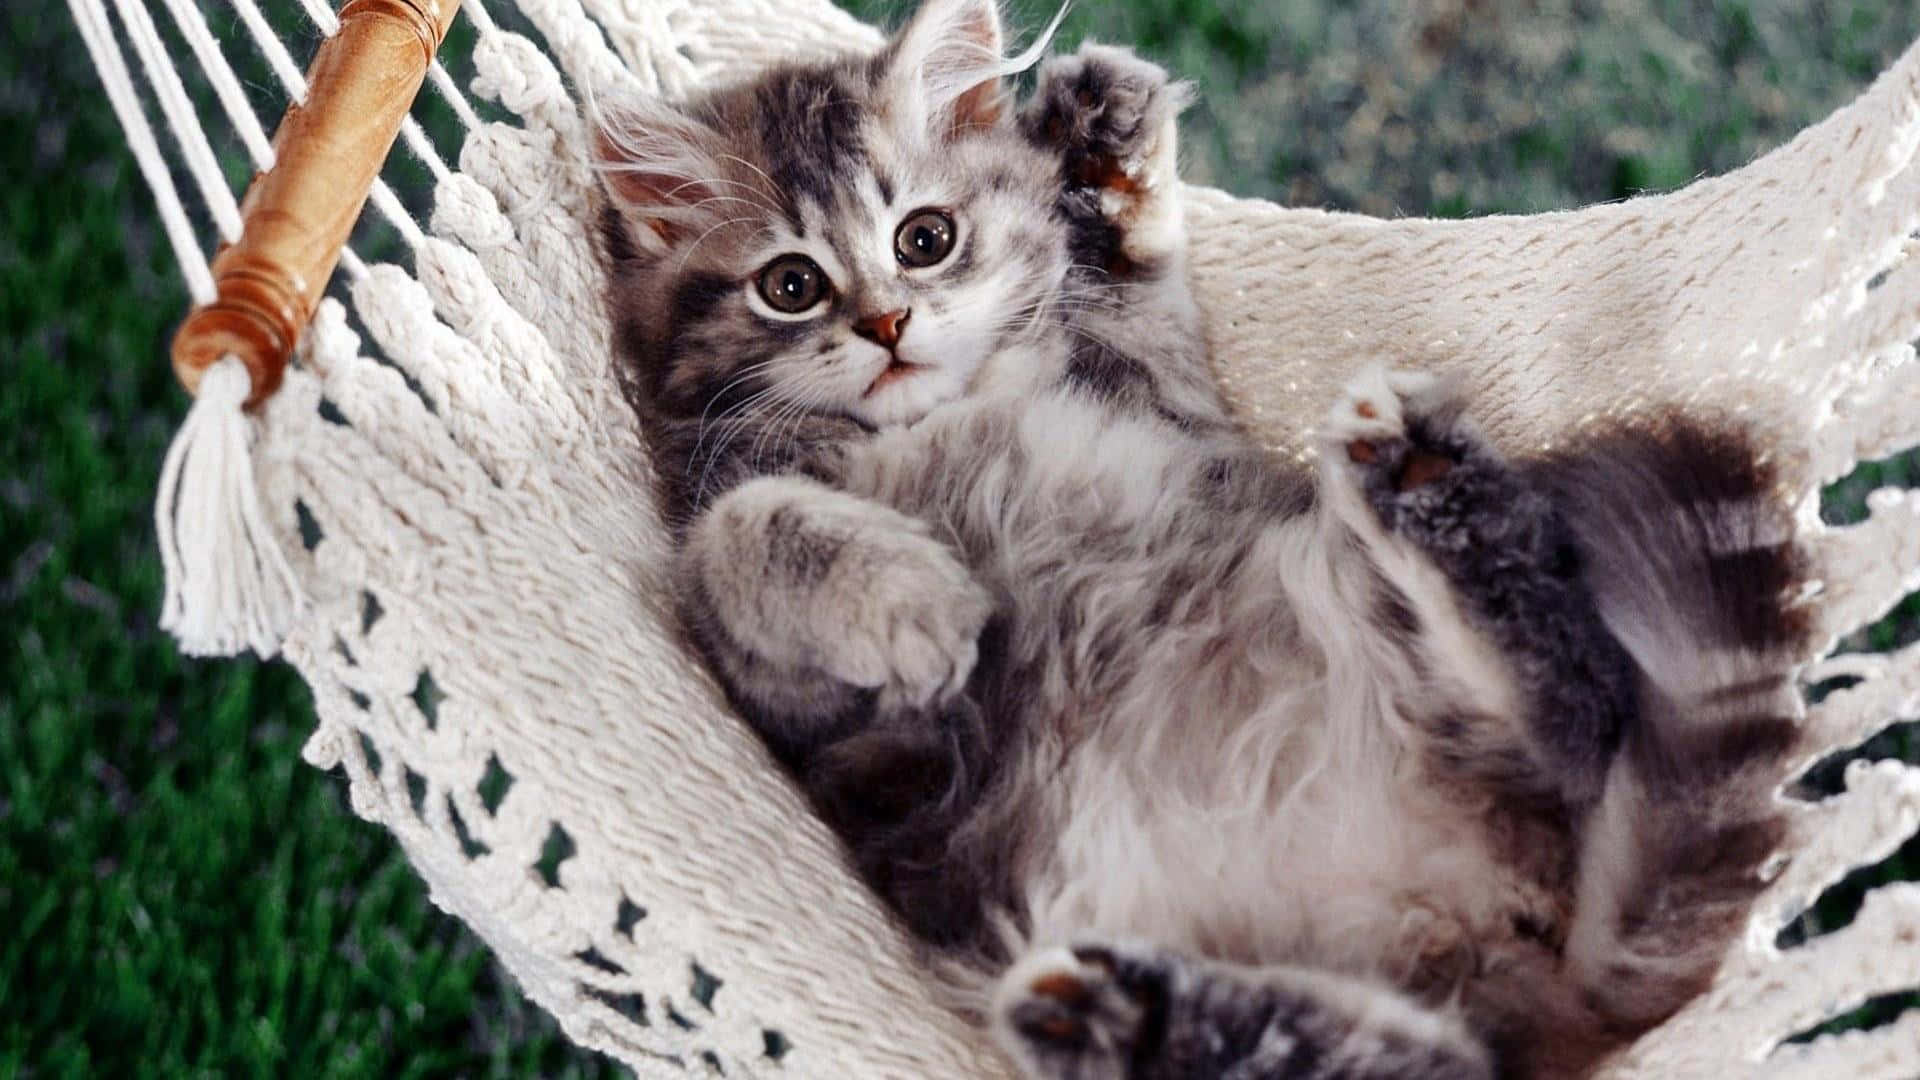 "Cute Little Kitty Cat"